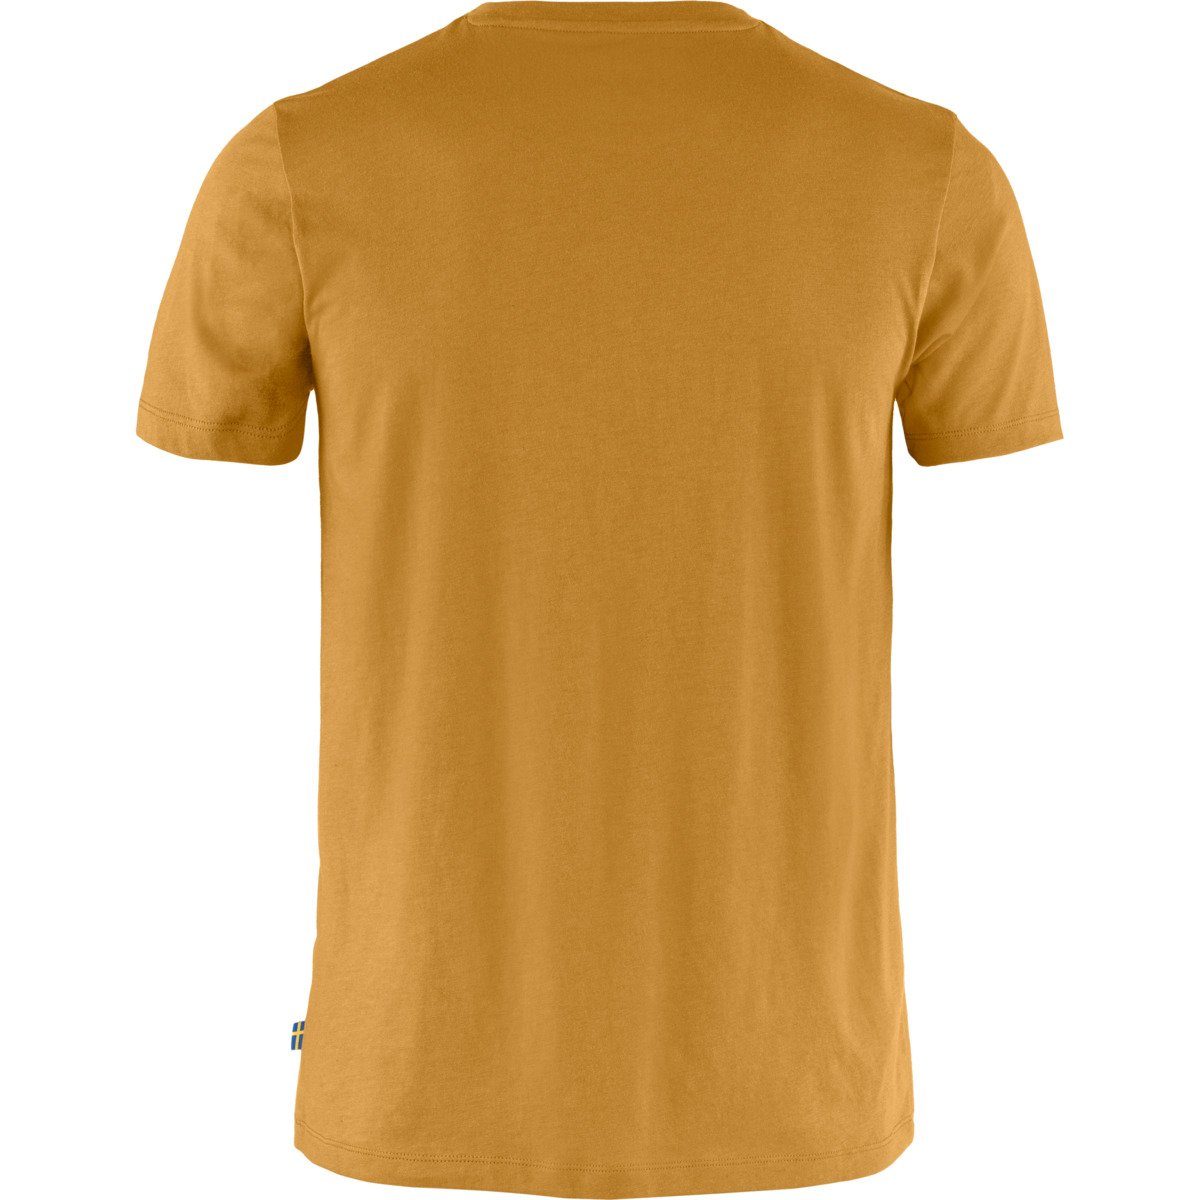 Herren gelb T-Shirt Fjällräven Fox